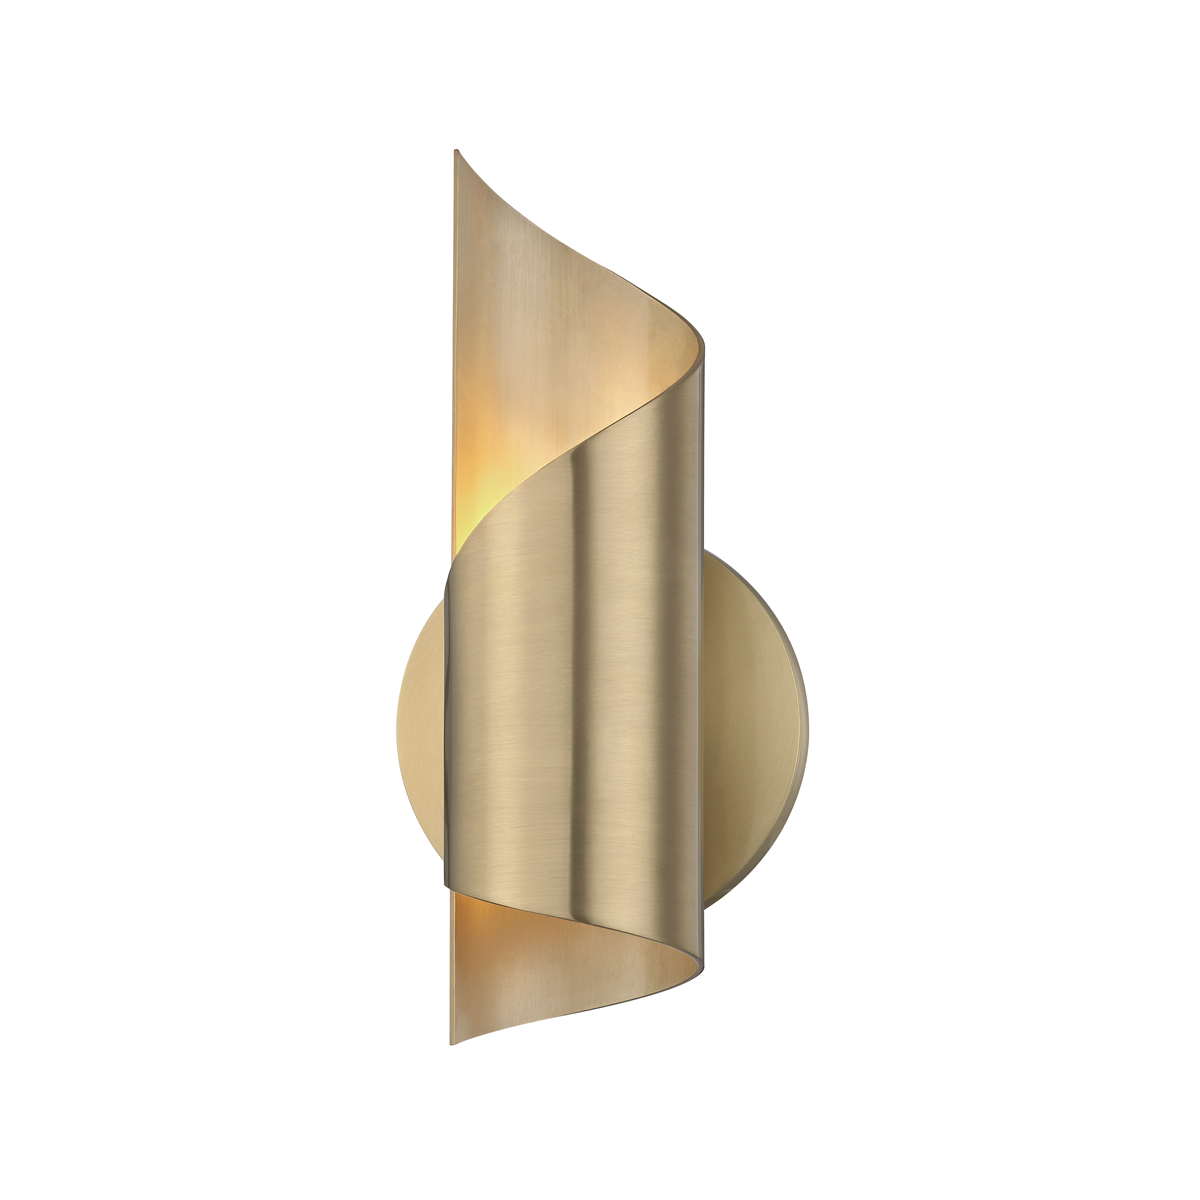 Hudson Valley Lighting Evie 1 Light Sconces H161101 Wall Light Fixtures Mitzi Aged Brass  